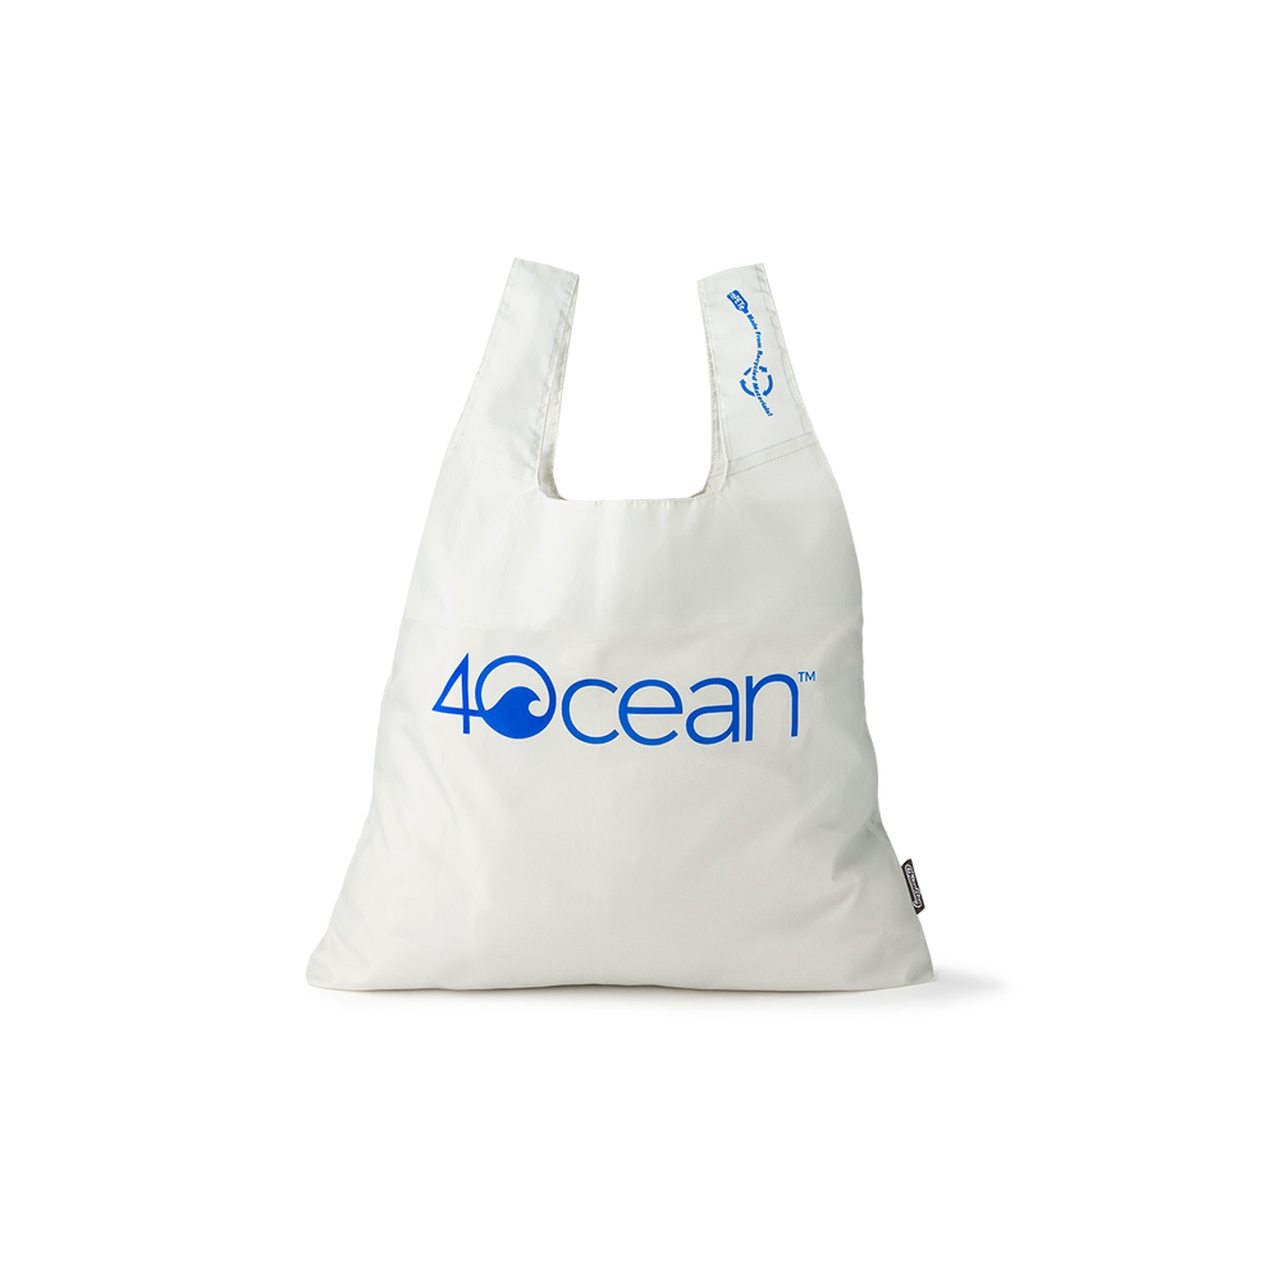 4ocean x ChicoBag Reusable Shopping Bag - Grey